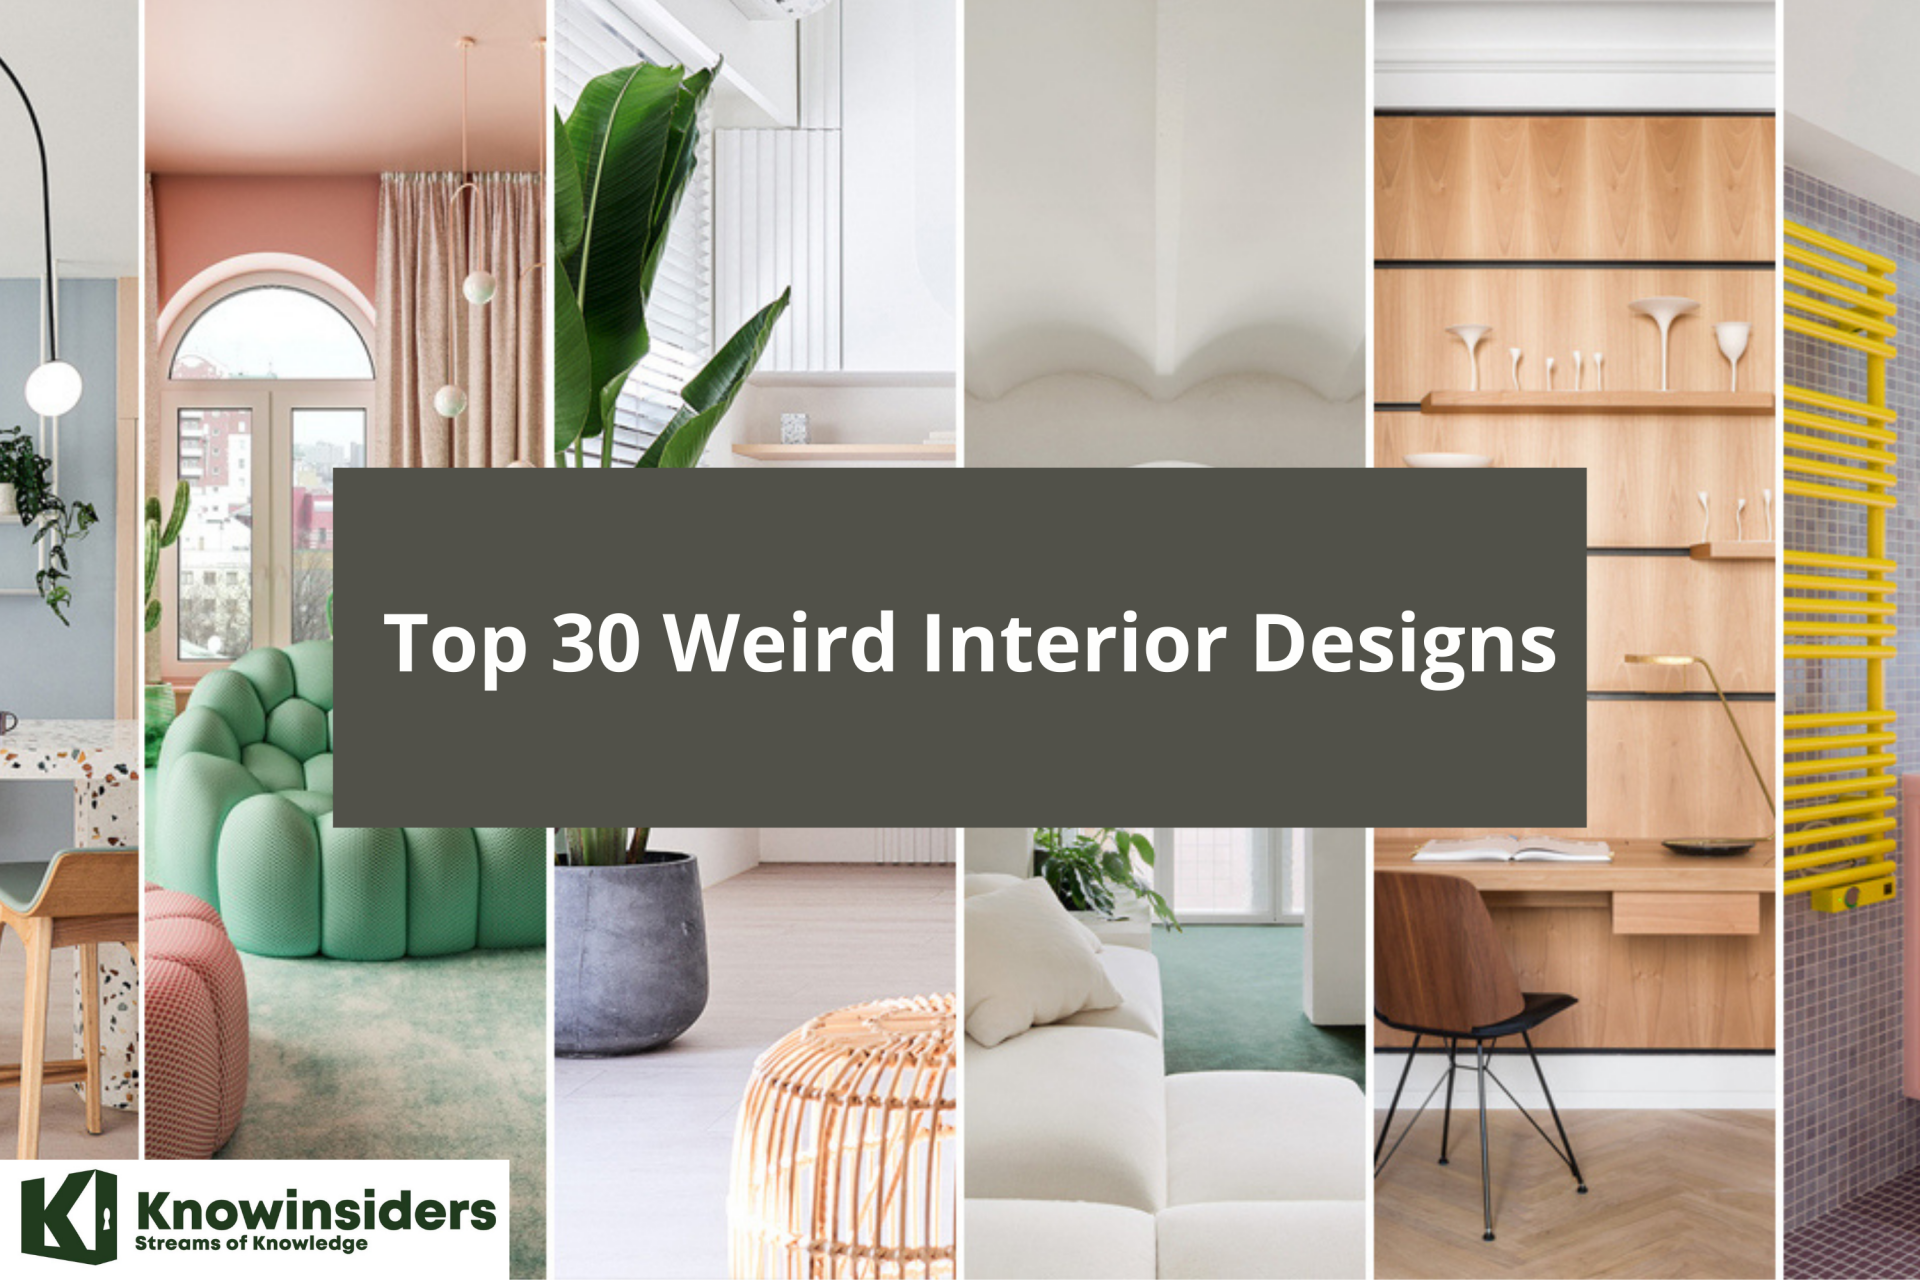  Top 30 Weird Interior Designs. Photo: KnowInsiders